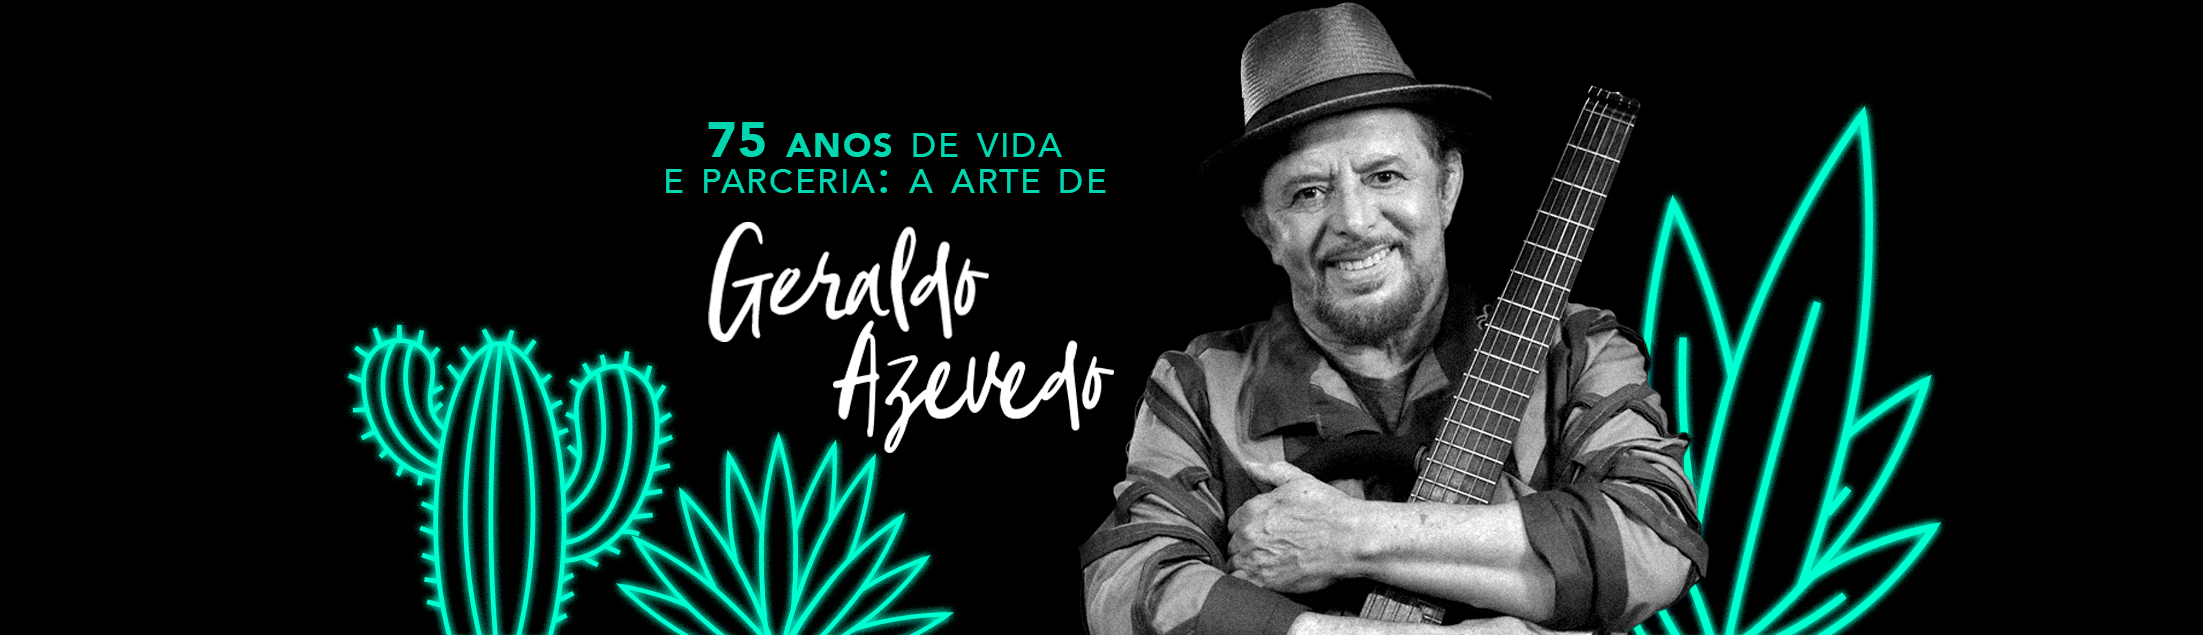 75 anos de vida e parceria: a arte de Geraldo Azevedo